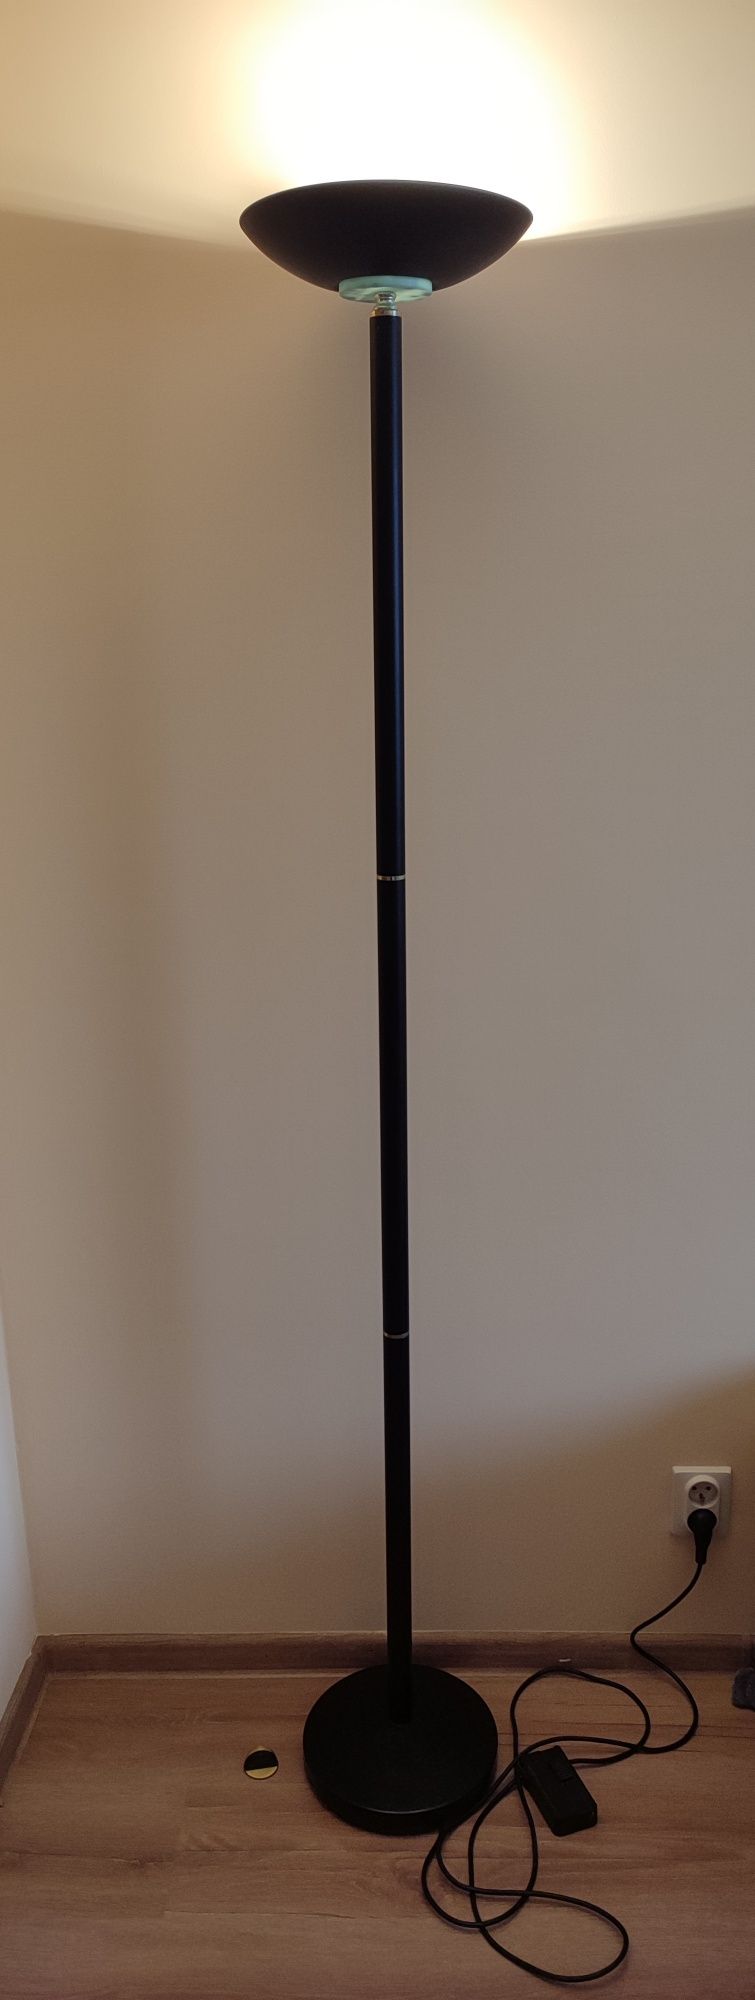 Lampa stojąca, 180cm + 4 żarówki